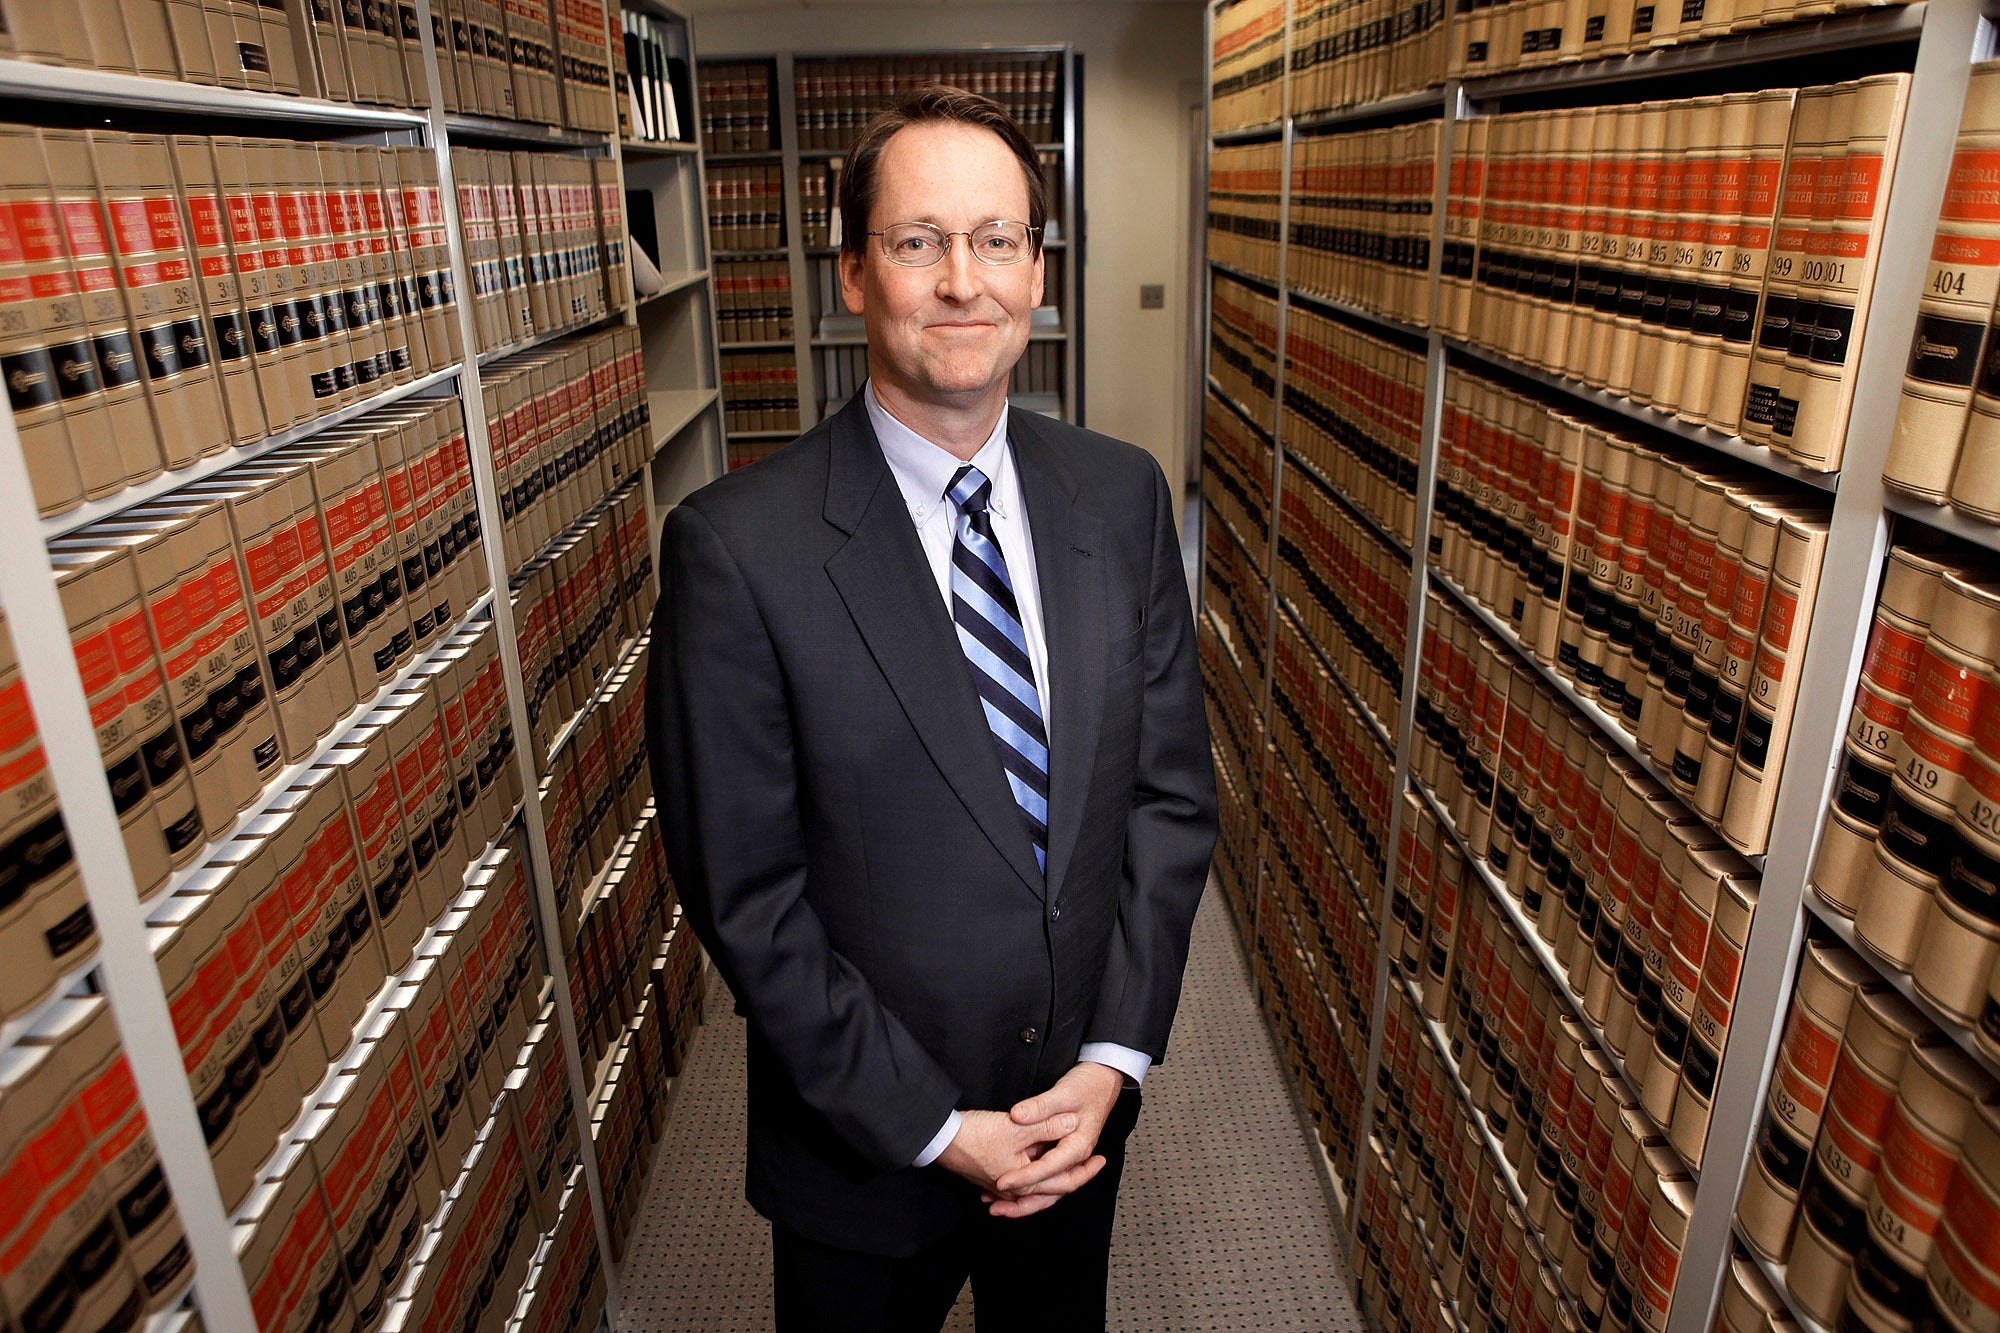 Fotografía de archivo del 19 de abril de 2010 muestra al juez federal de distrito William Conley en el Palacio de Justicia de los Estados Unidos en Madison.